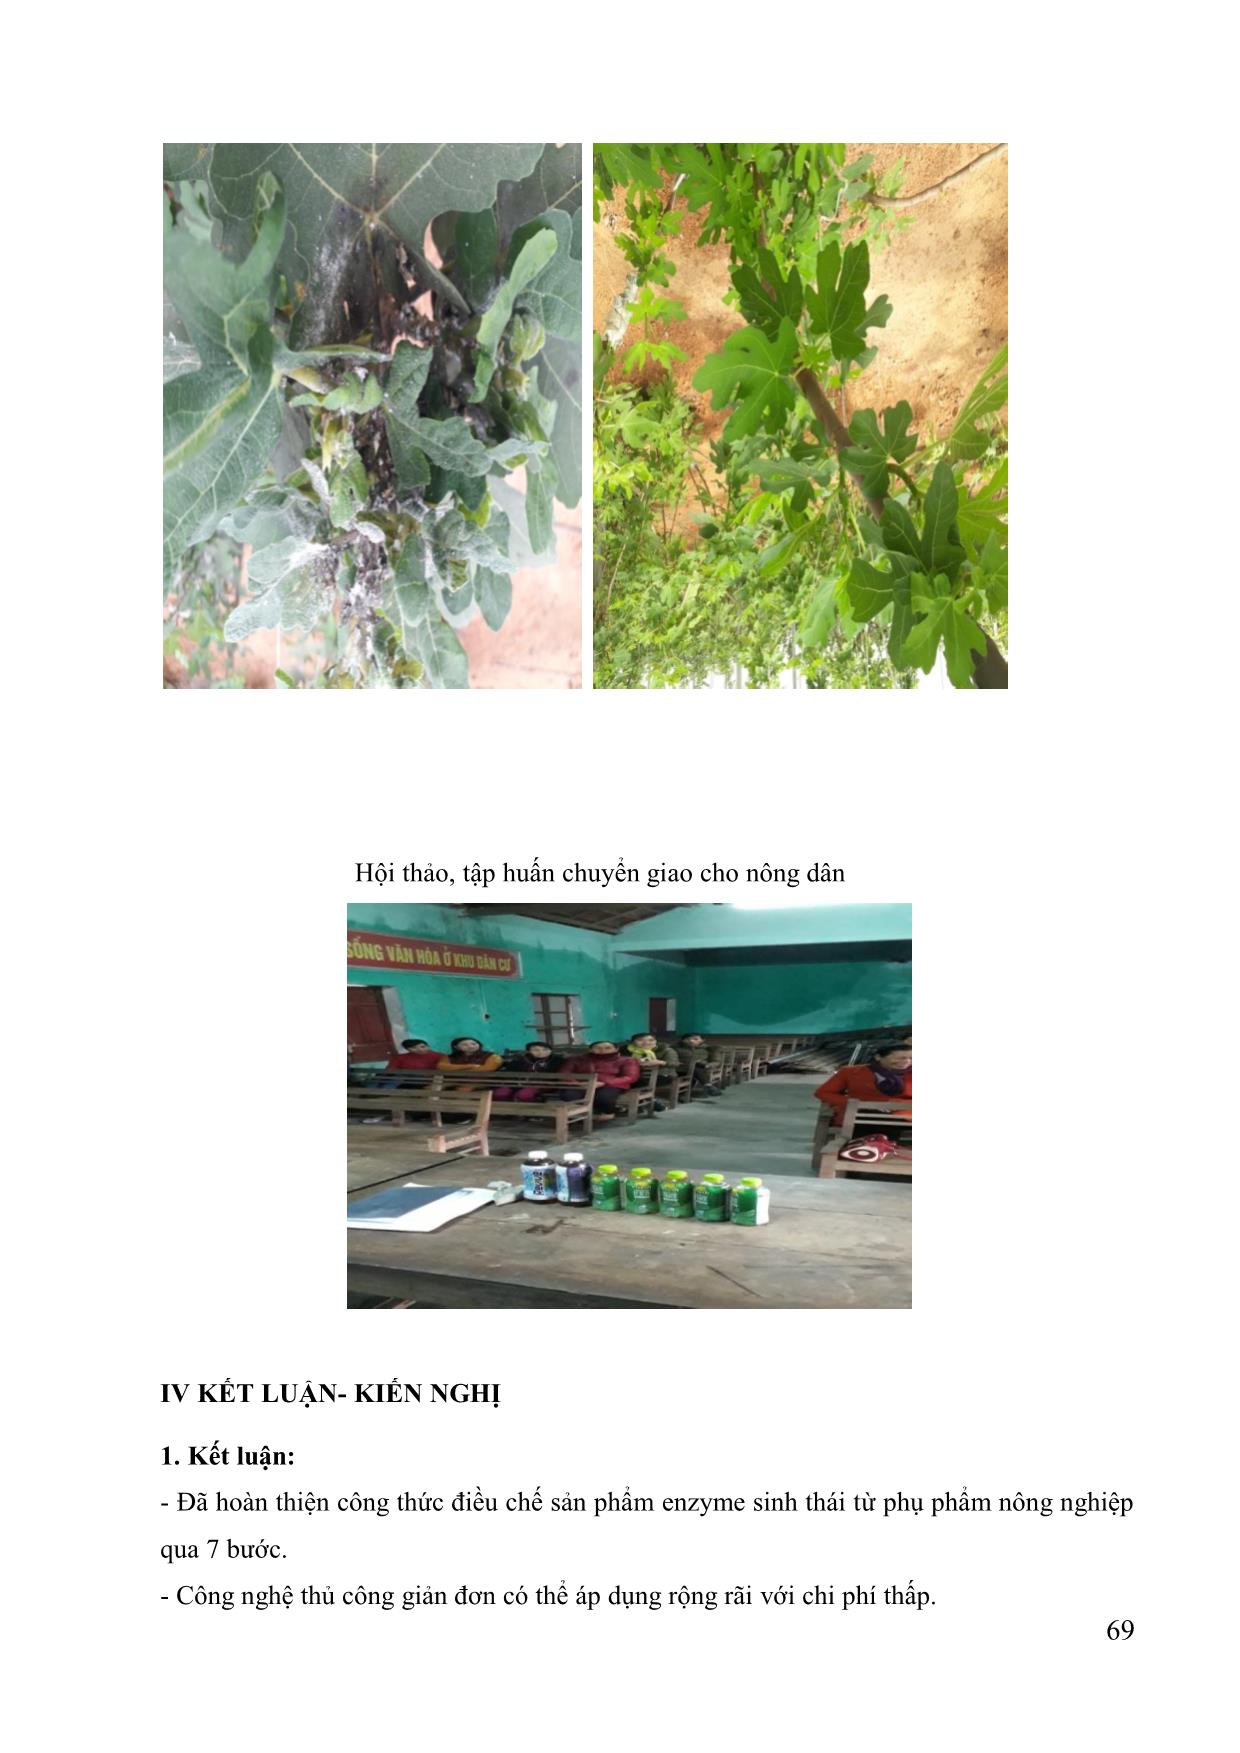 Điều chế chế phẩm enzyme sinh thái làm thuốc trừ rệp sáp trên cây ăn quả, cây công nghiệp trang 6